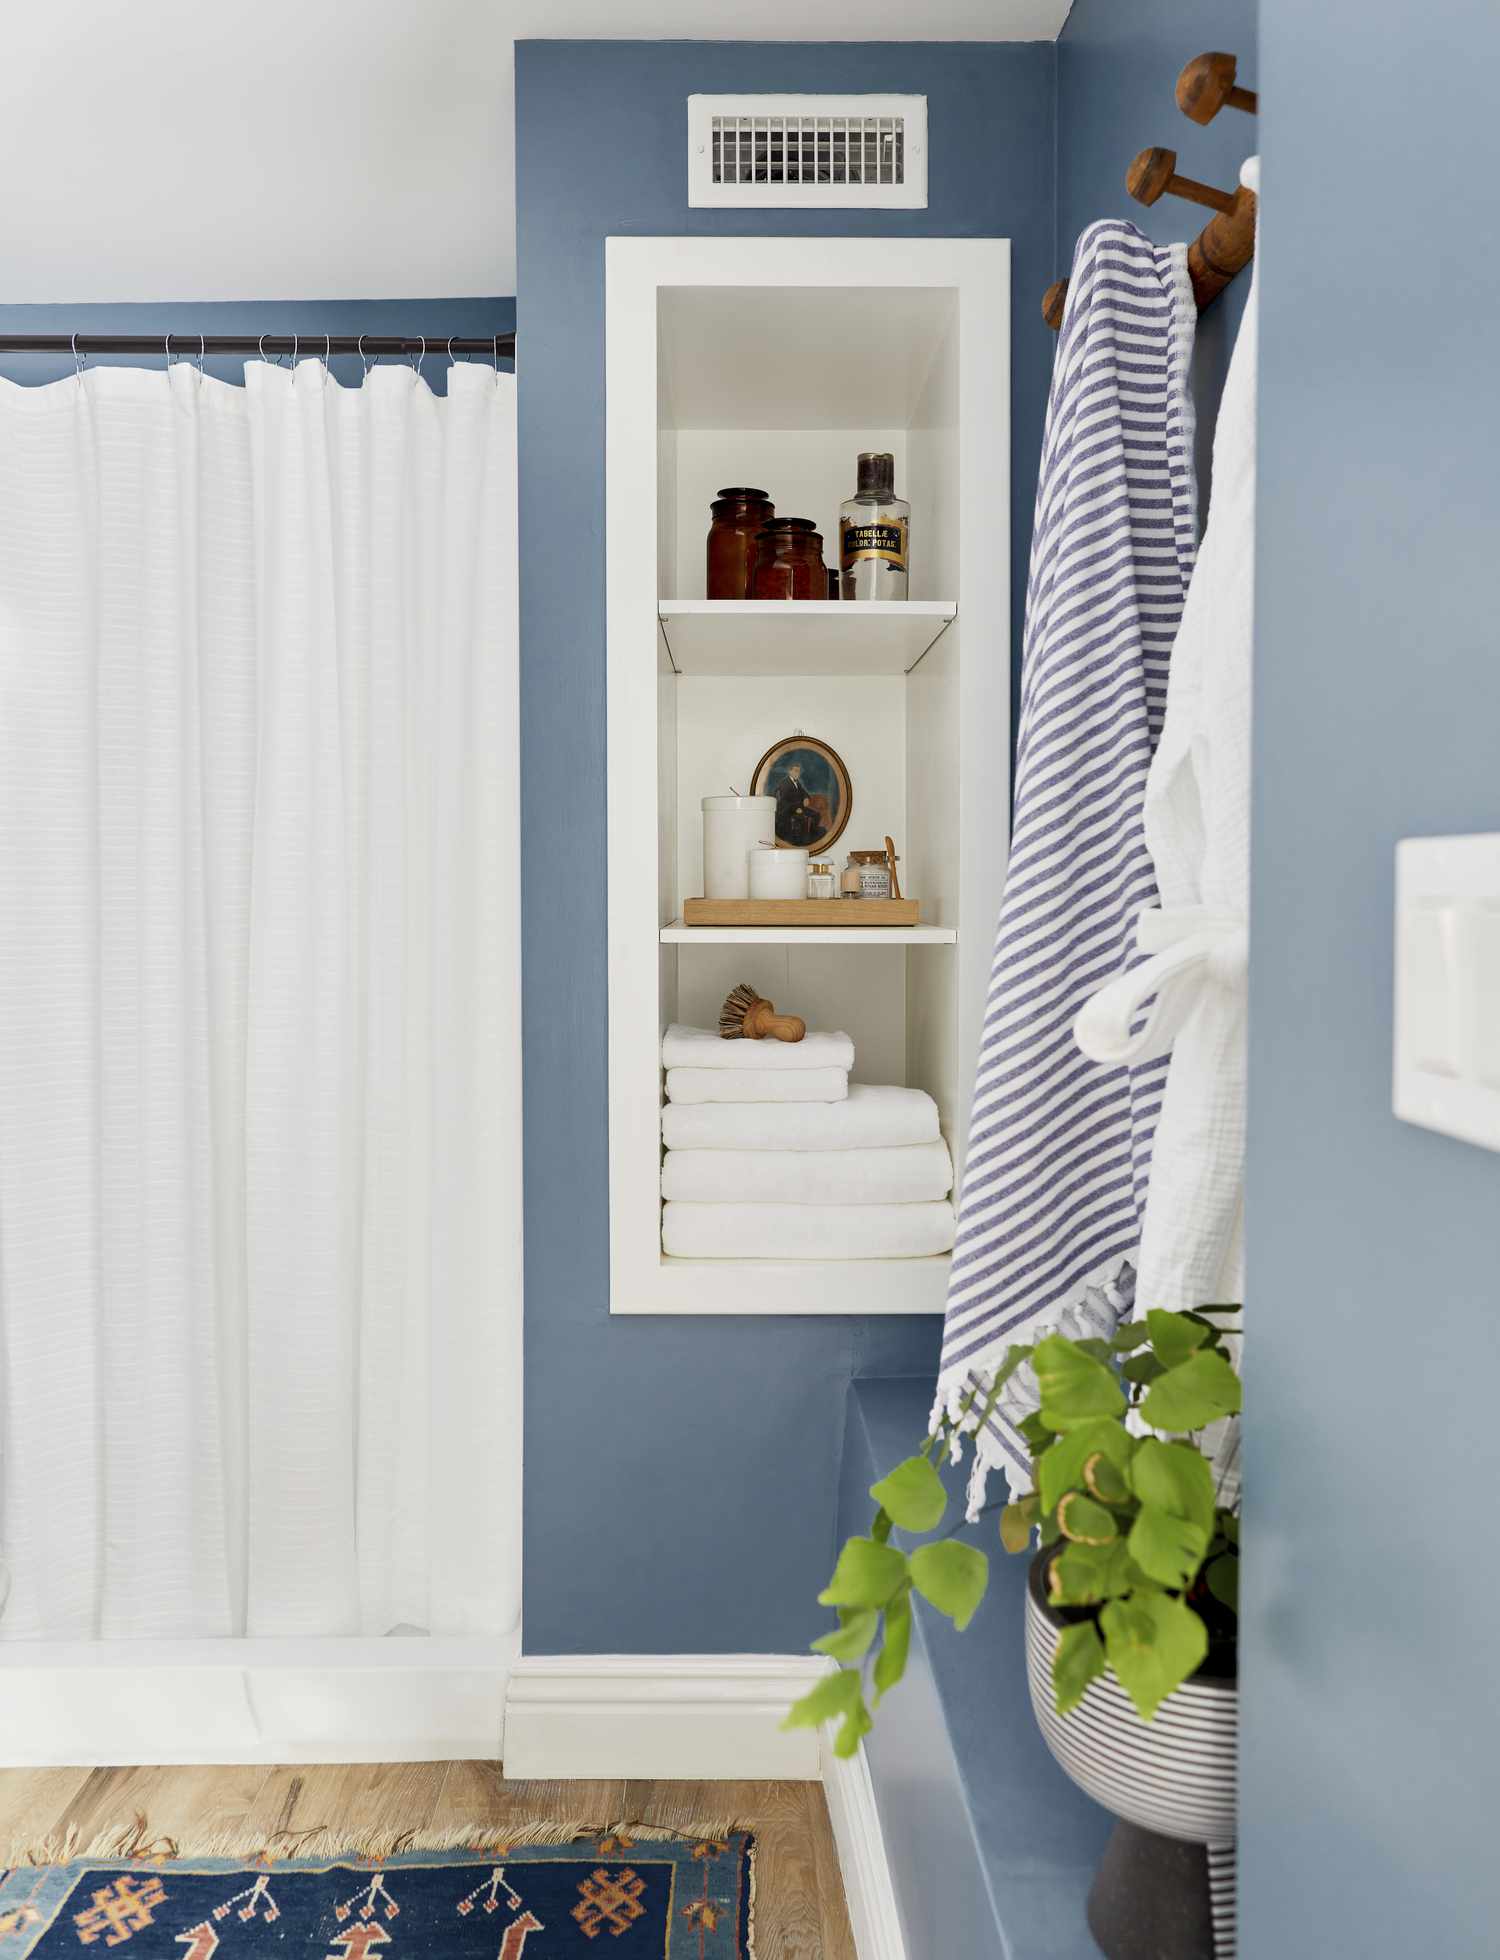 Ein in einem sanften Blauton gestrichenes Badezimmer hat einen weißen Duschvorhang